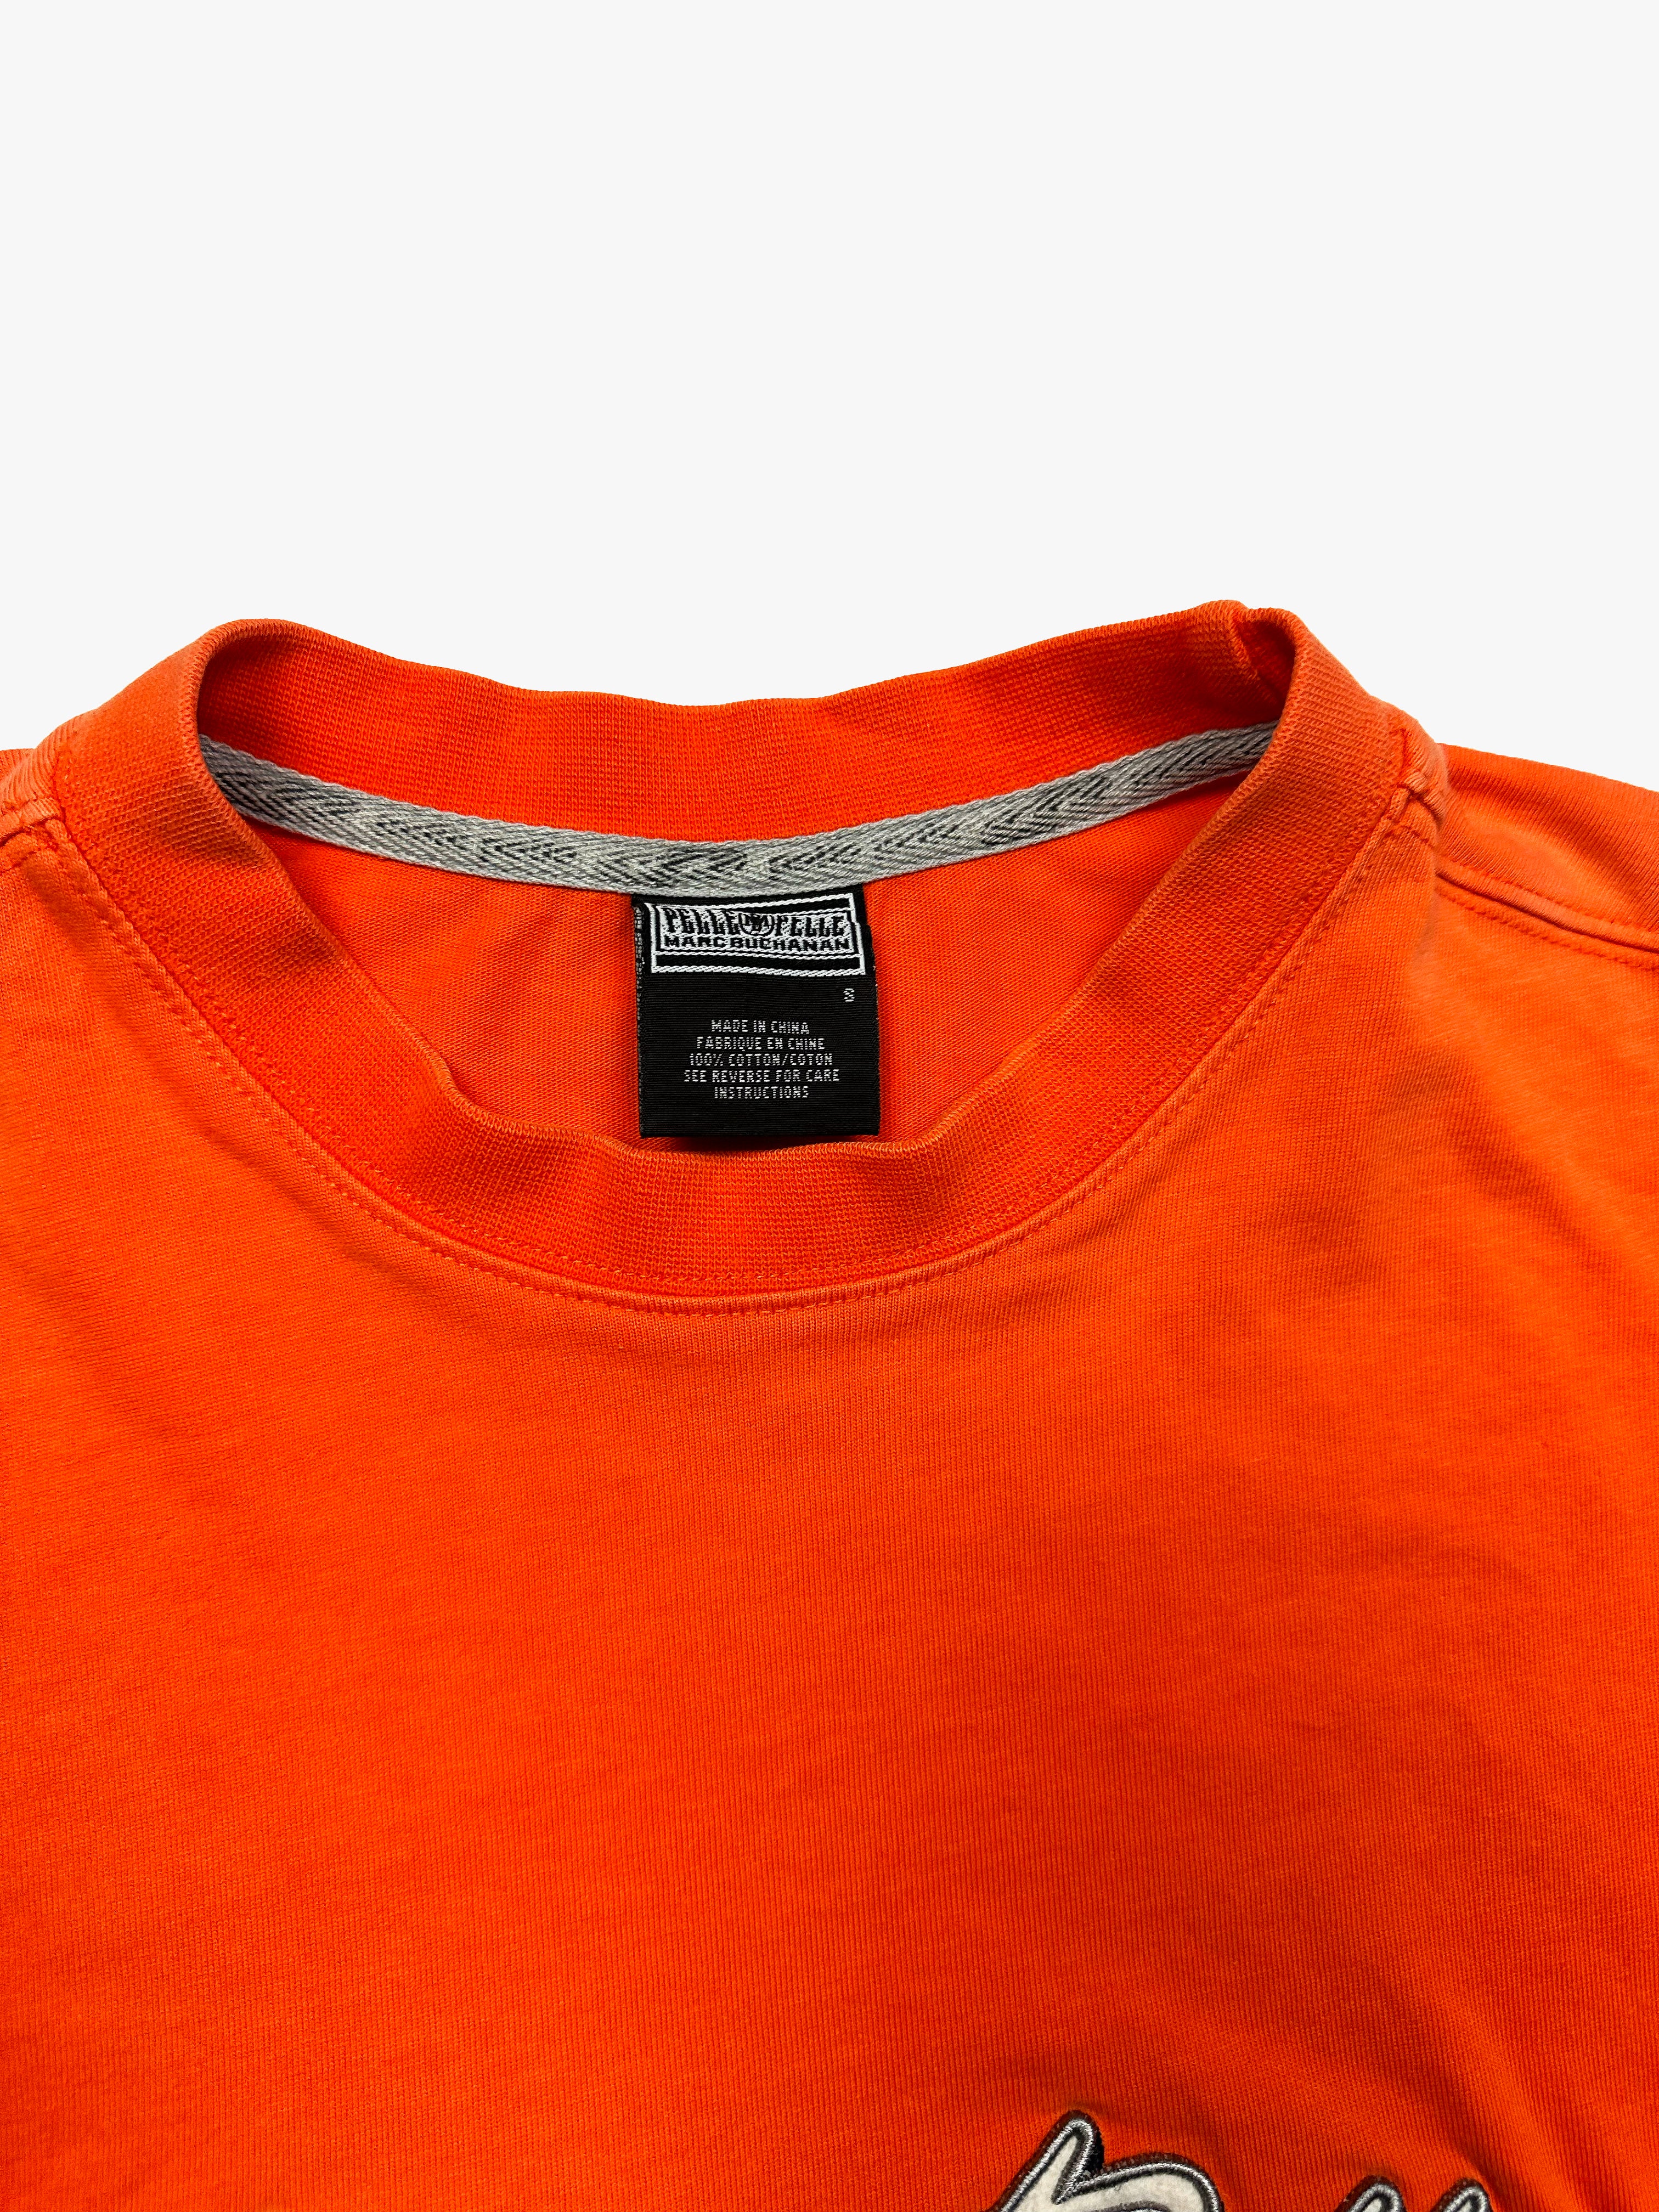 Pelle Pelle Orange Spell Out T-shirt 90's